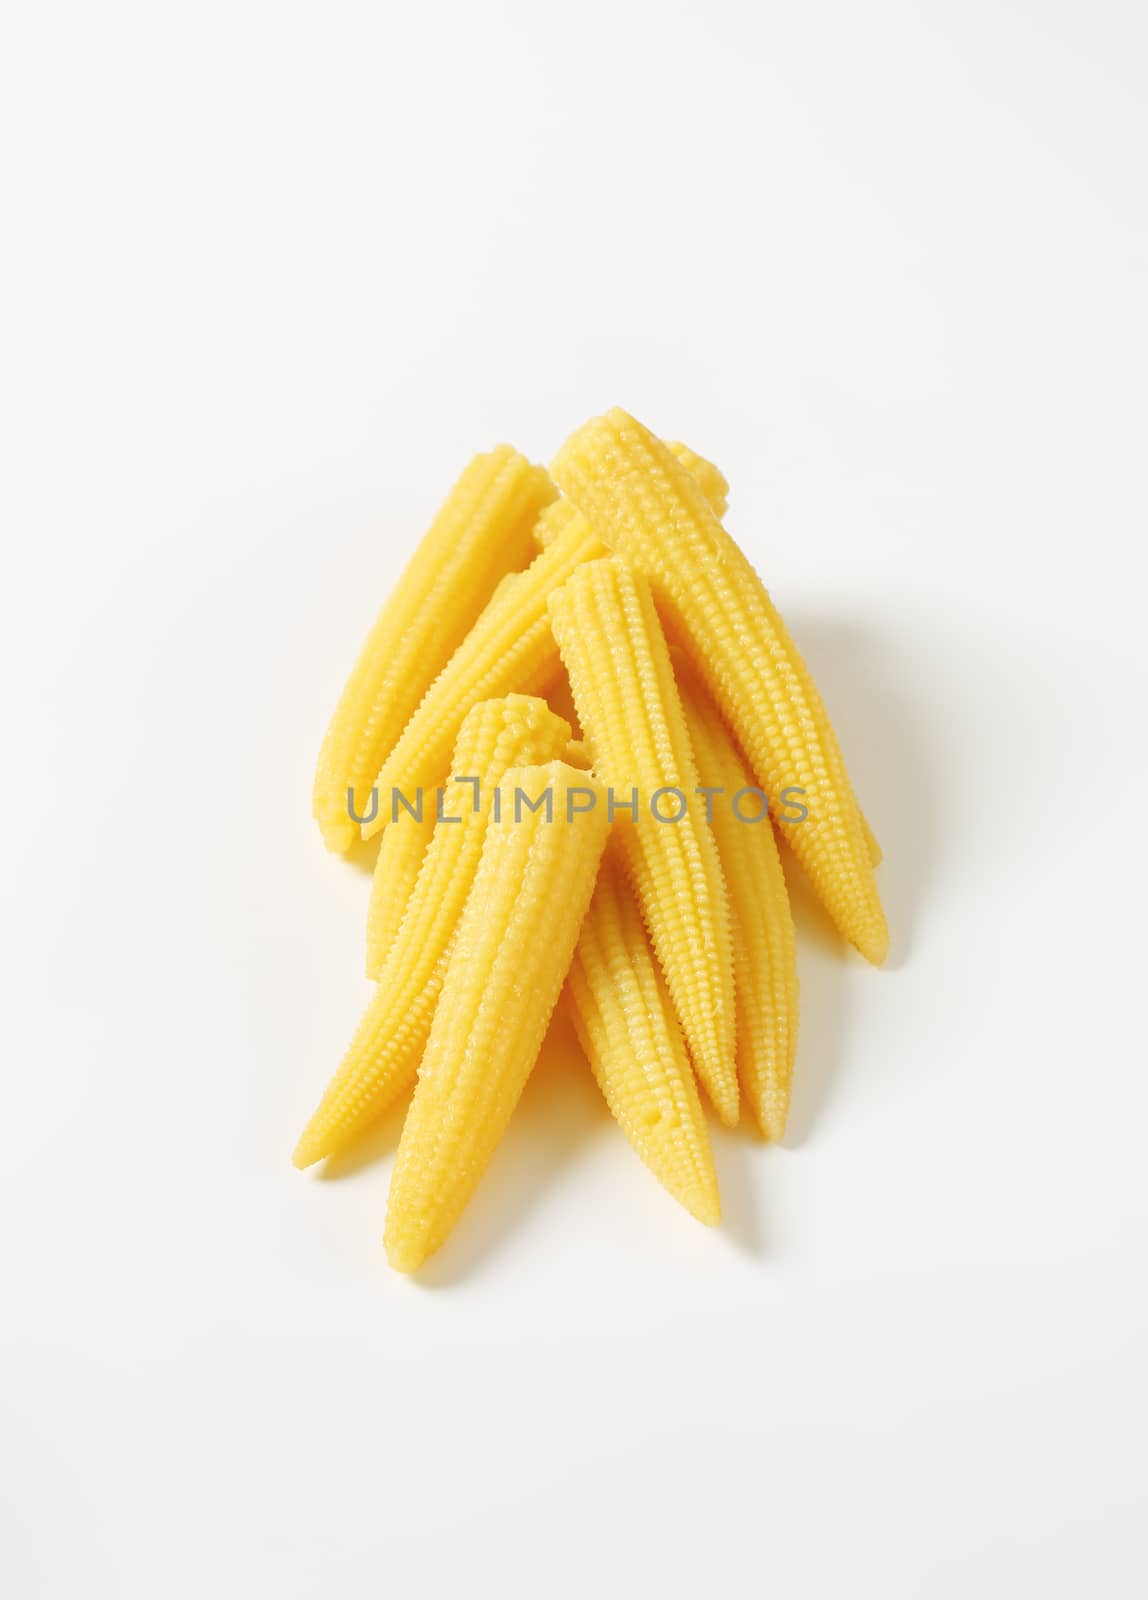 sweet baby corn by Digifoodstock